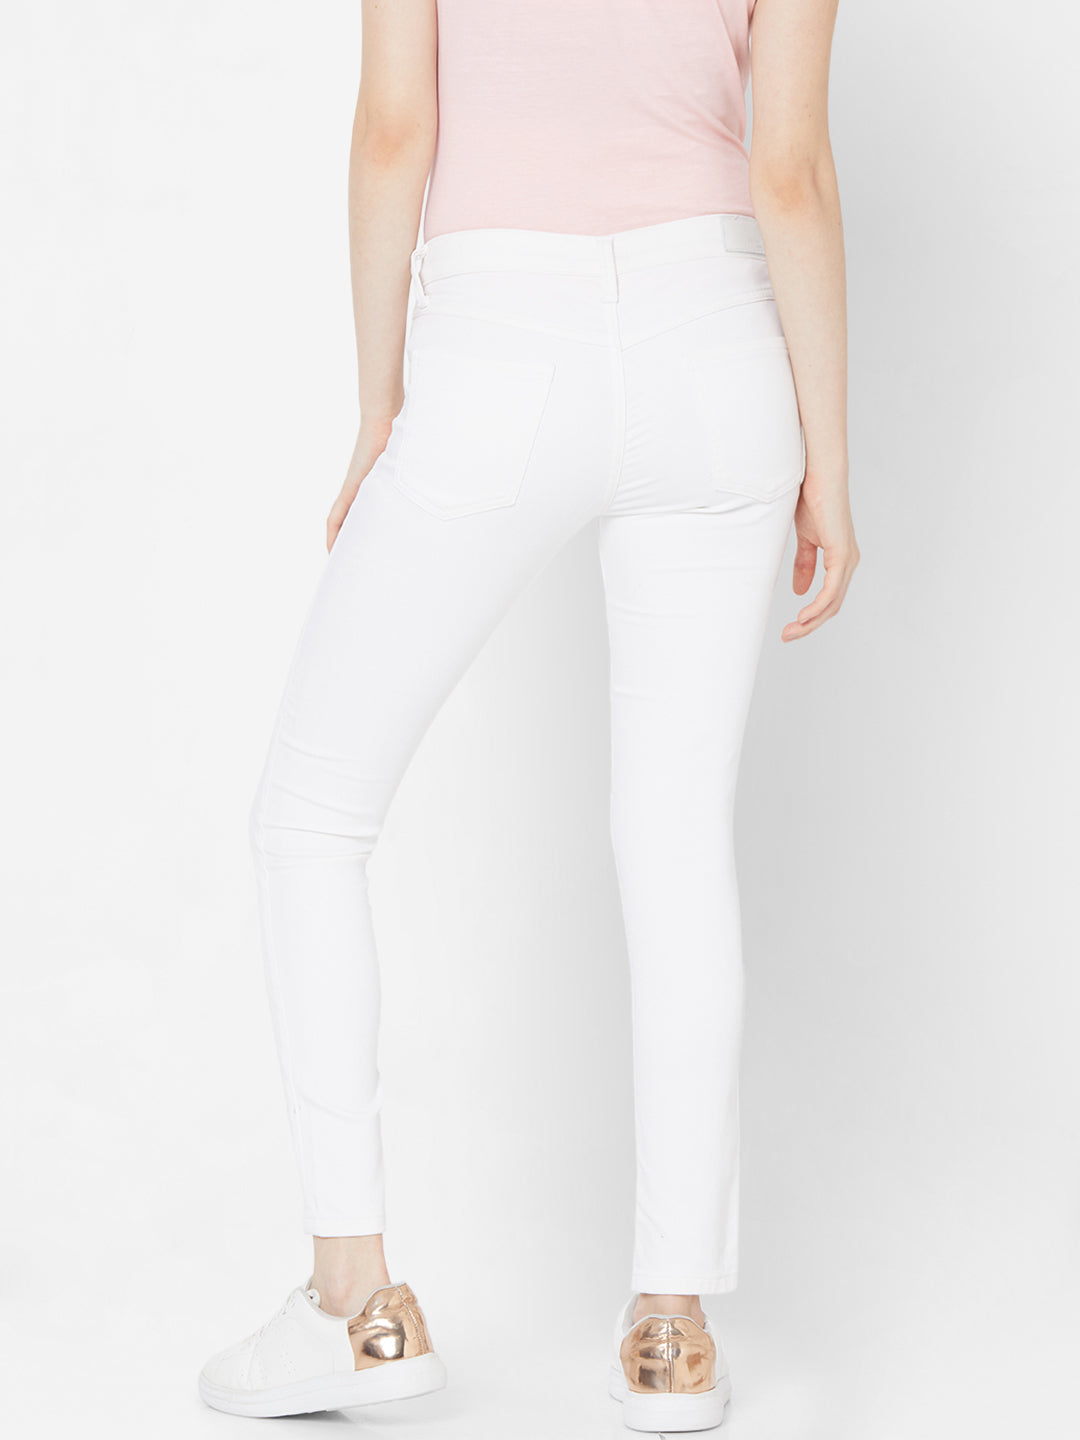 Spykar White Lycra Super Skinny Regular Length Jeans For Women (Alicia)